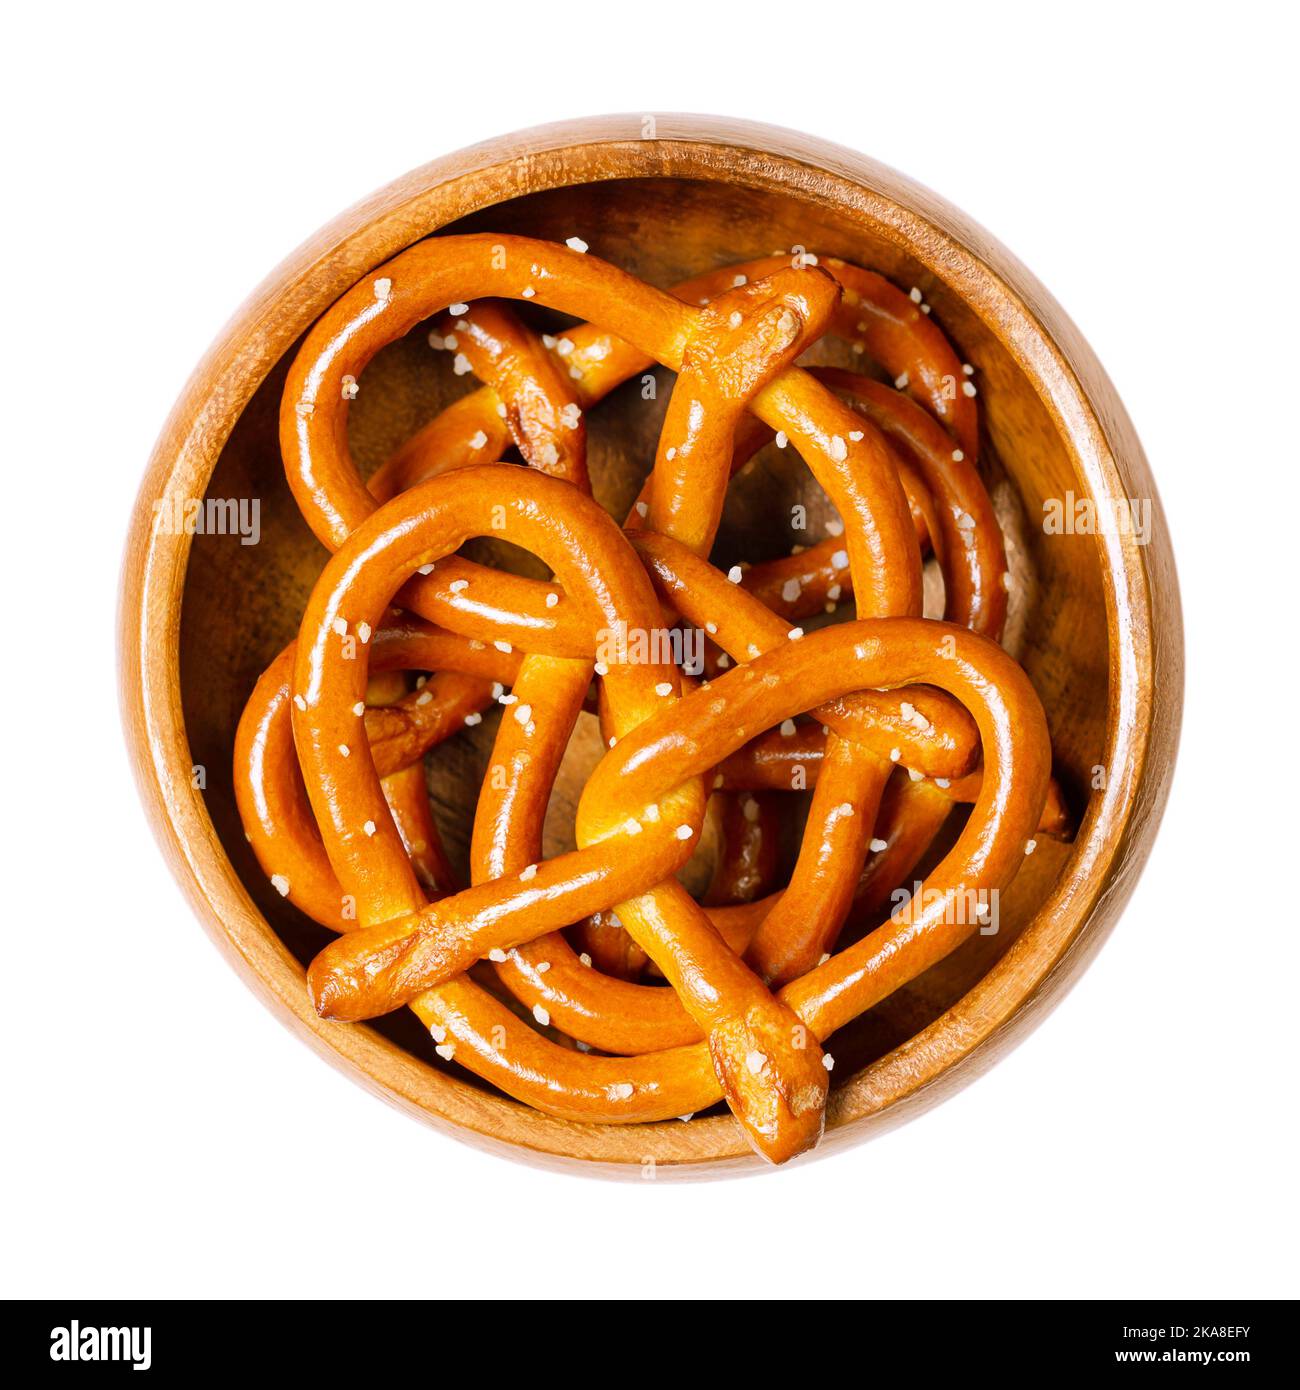 Piccoli pretzel duri salati, conosciuti anche come Brezel, in una ciotola di legno. Popolare, tradizionale e croccante snack. Un tipo di pane al forno, fatto di pasta. Foto Stock